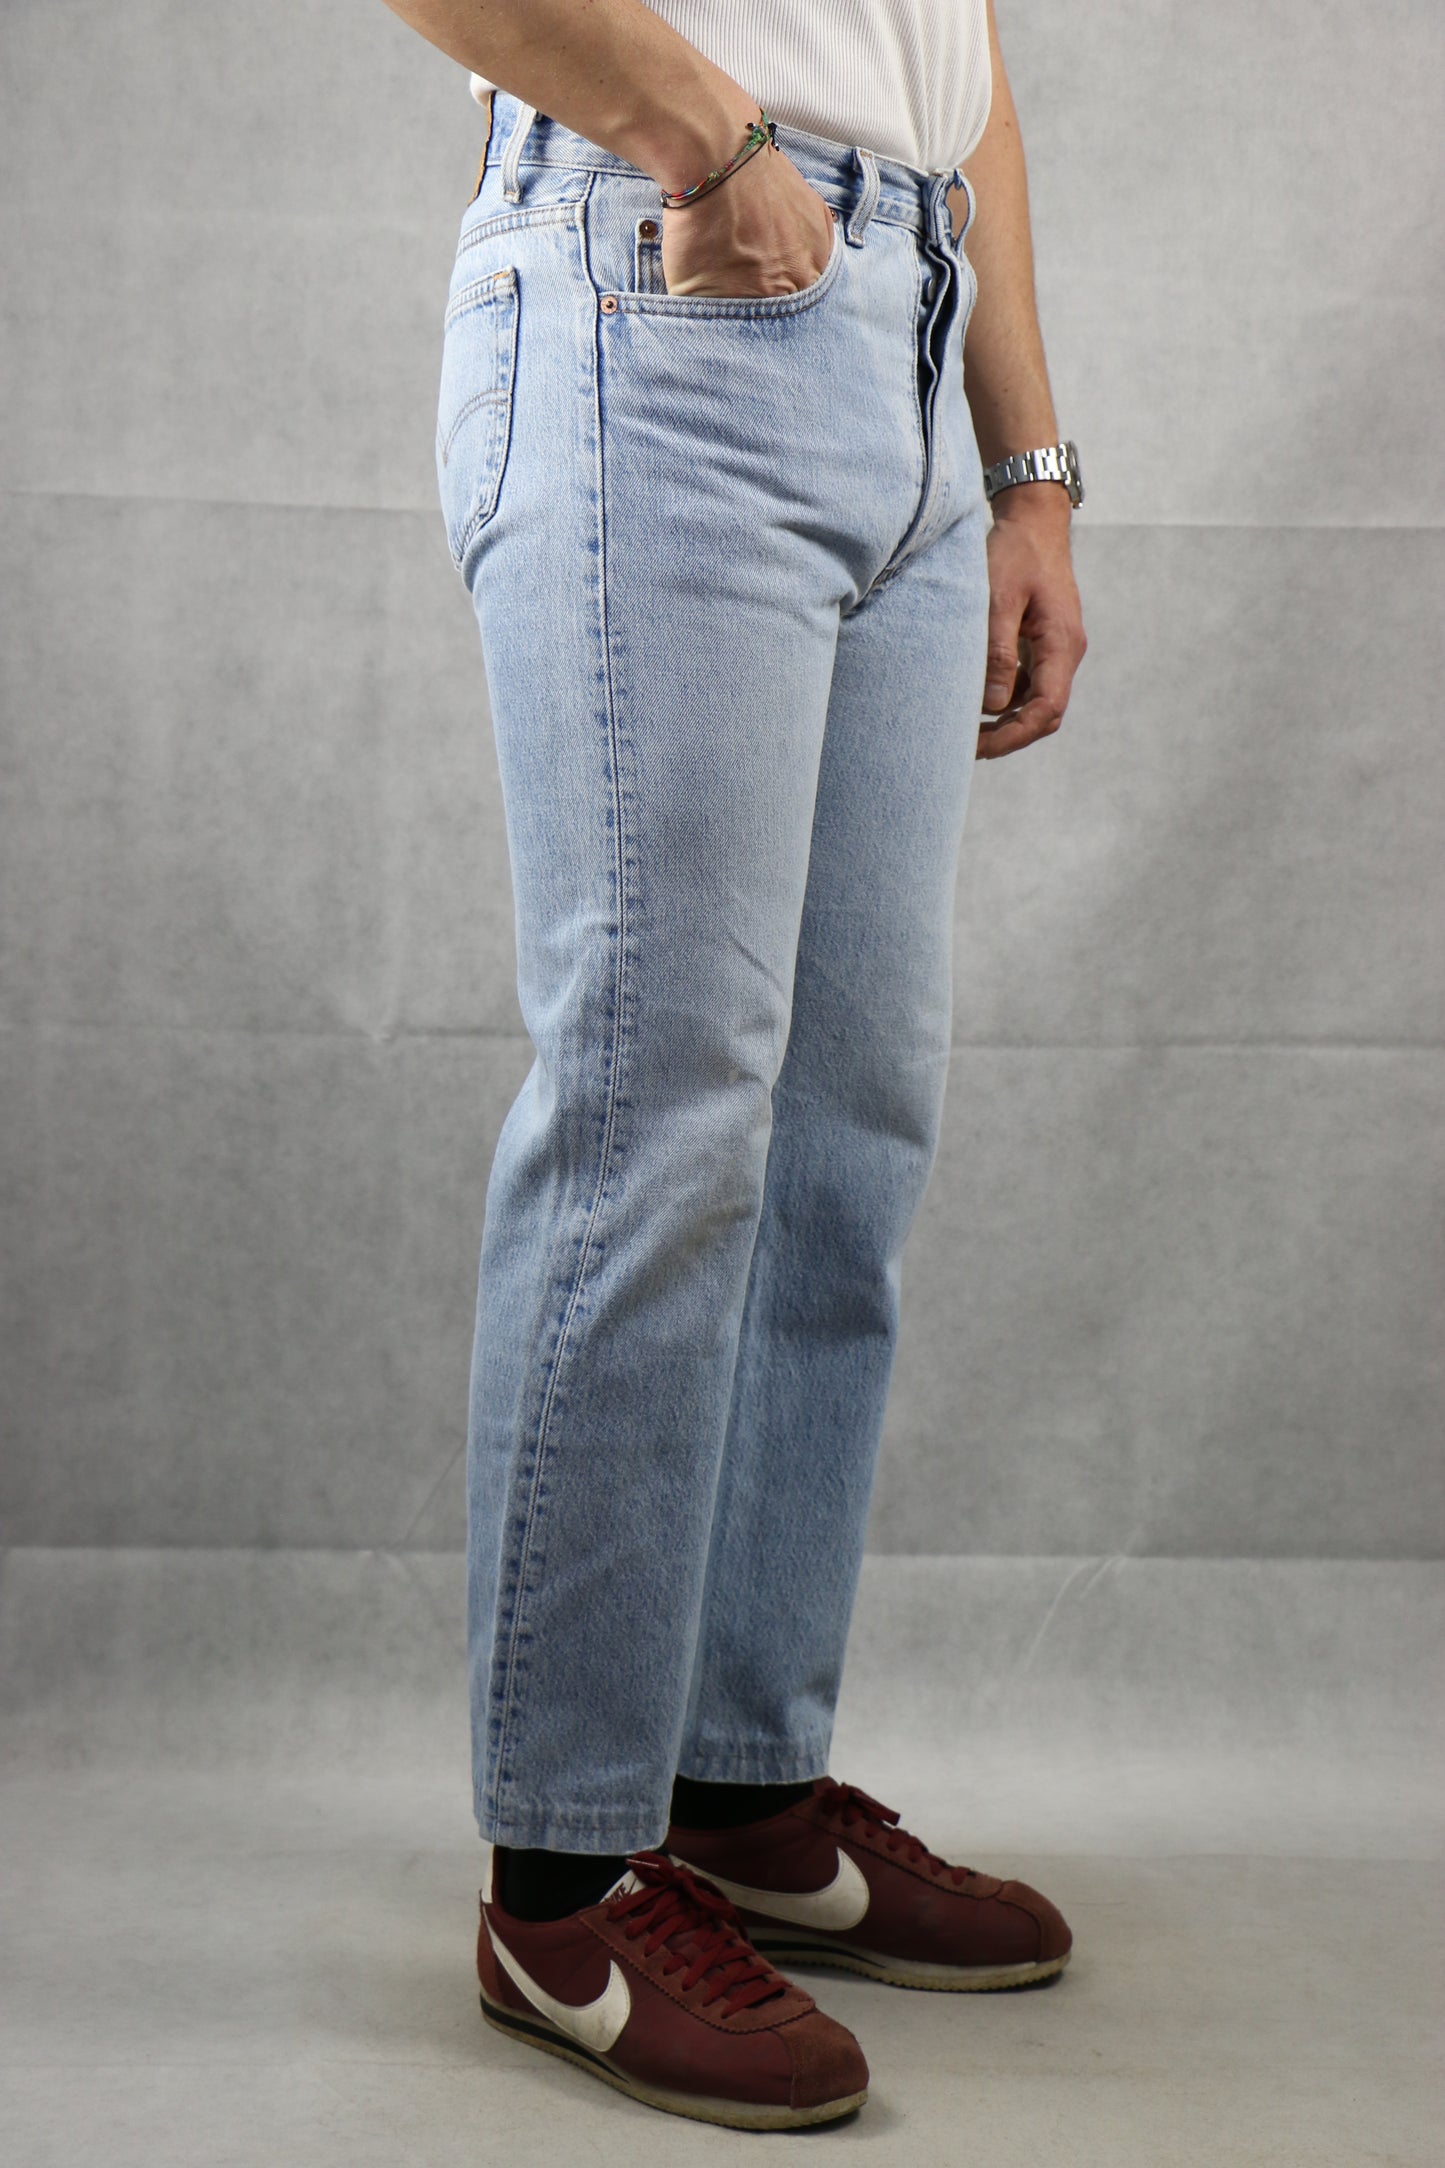 Levi's 501 Jeans Made in U.S.A. W34 L33, clochard92.com